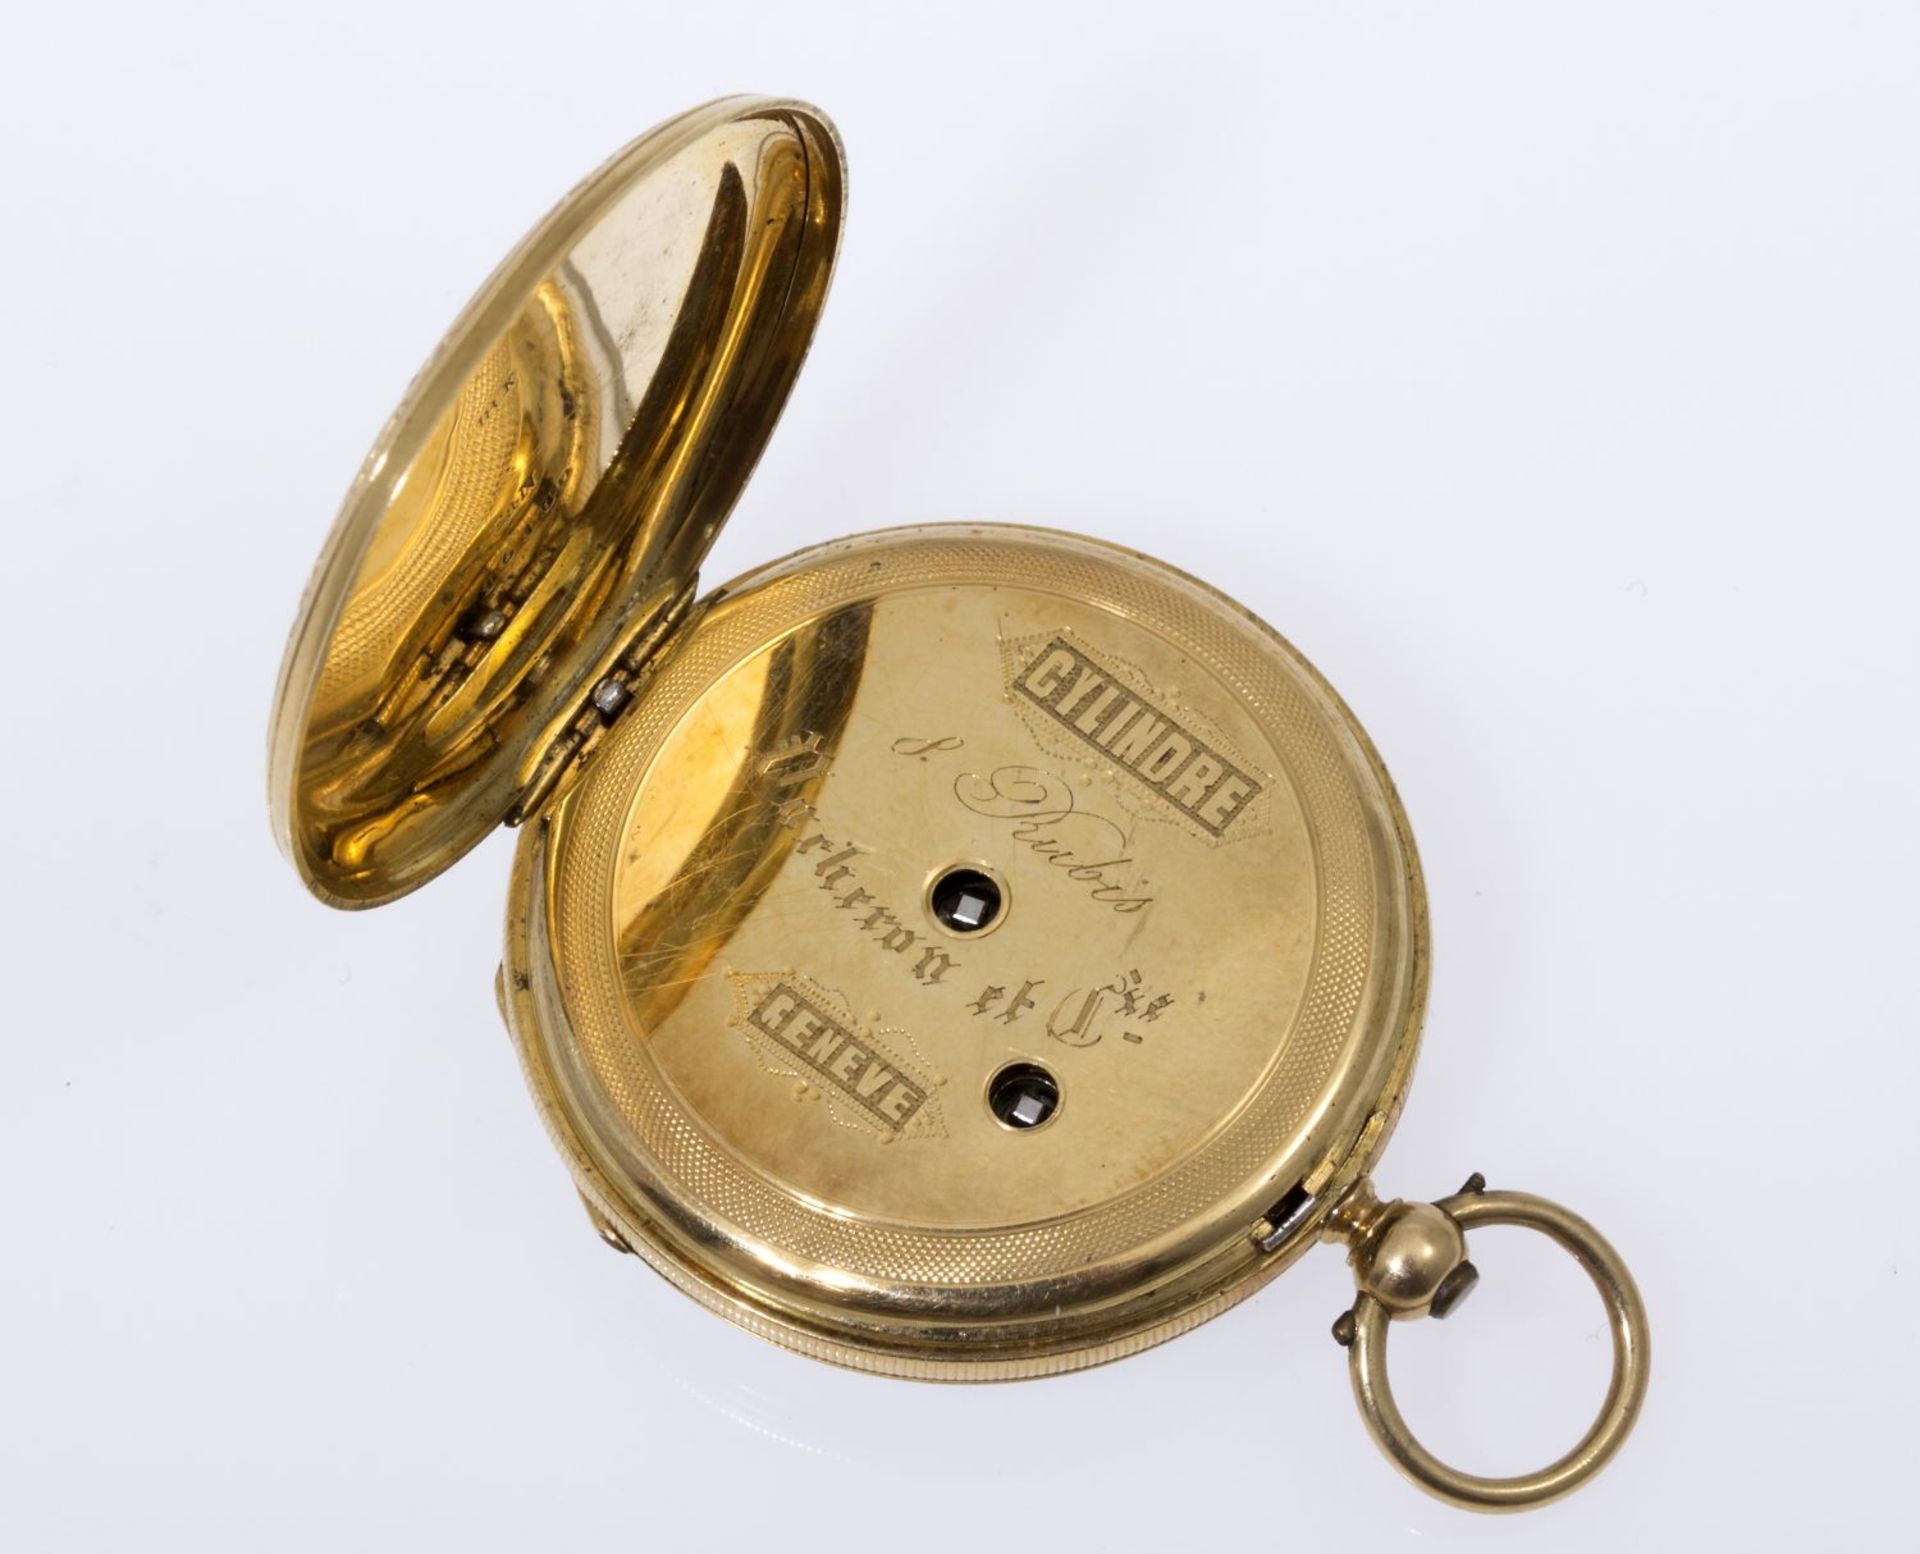 DamentaschenuhrGehäuse und Cuvette aus Gelbgold 750. Gravurdekor mit Akzenten in schwarzem und - Image 3 of 4